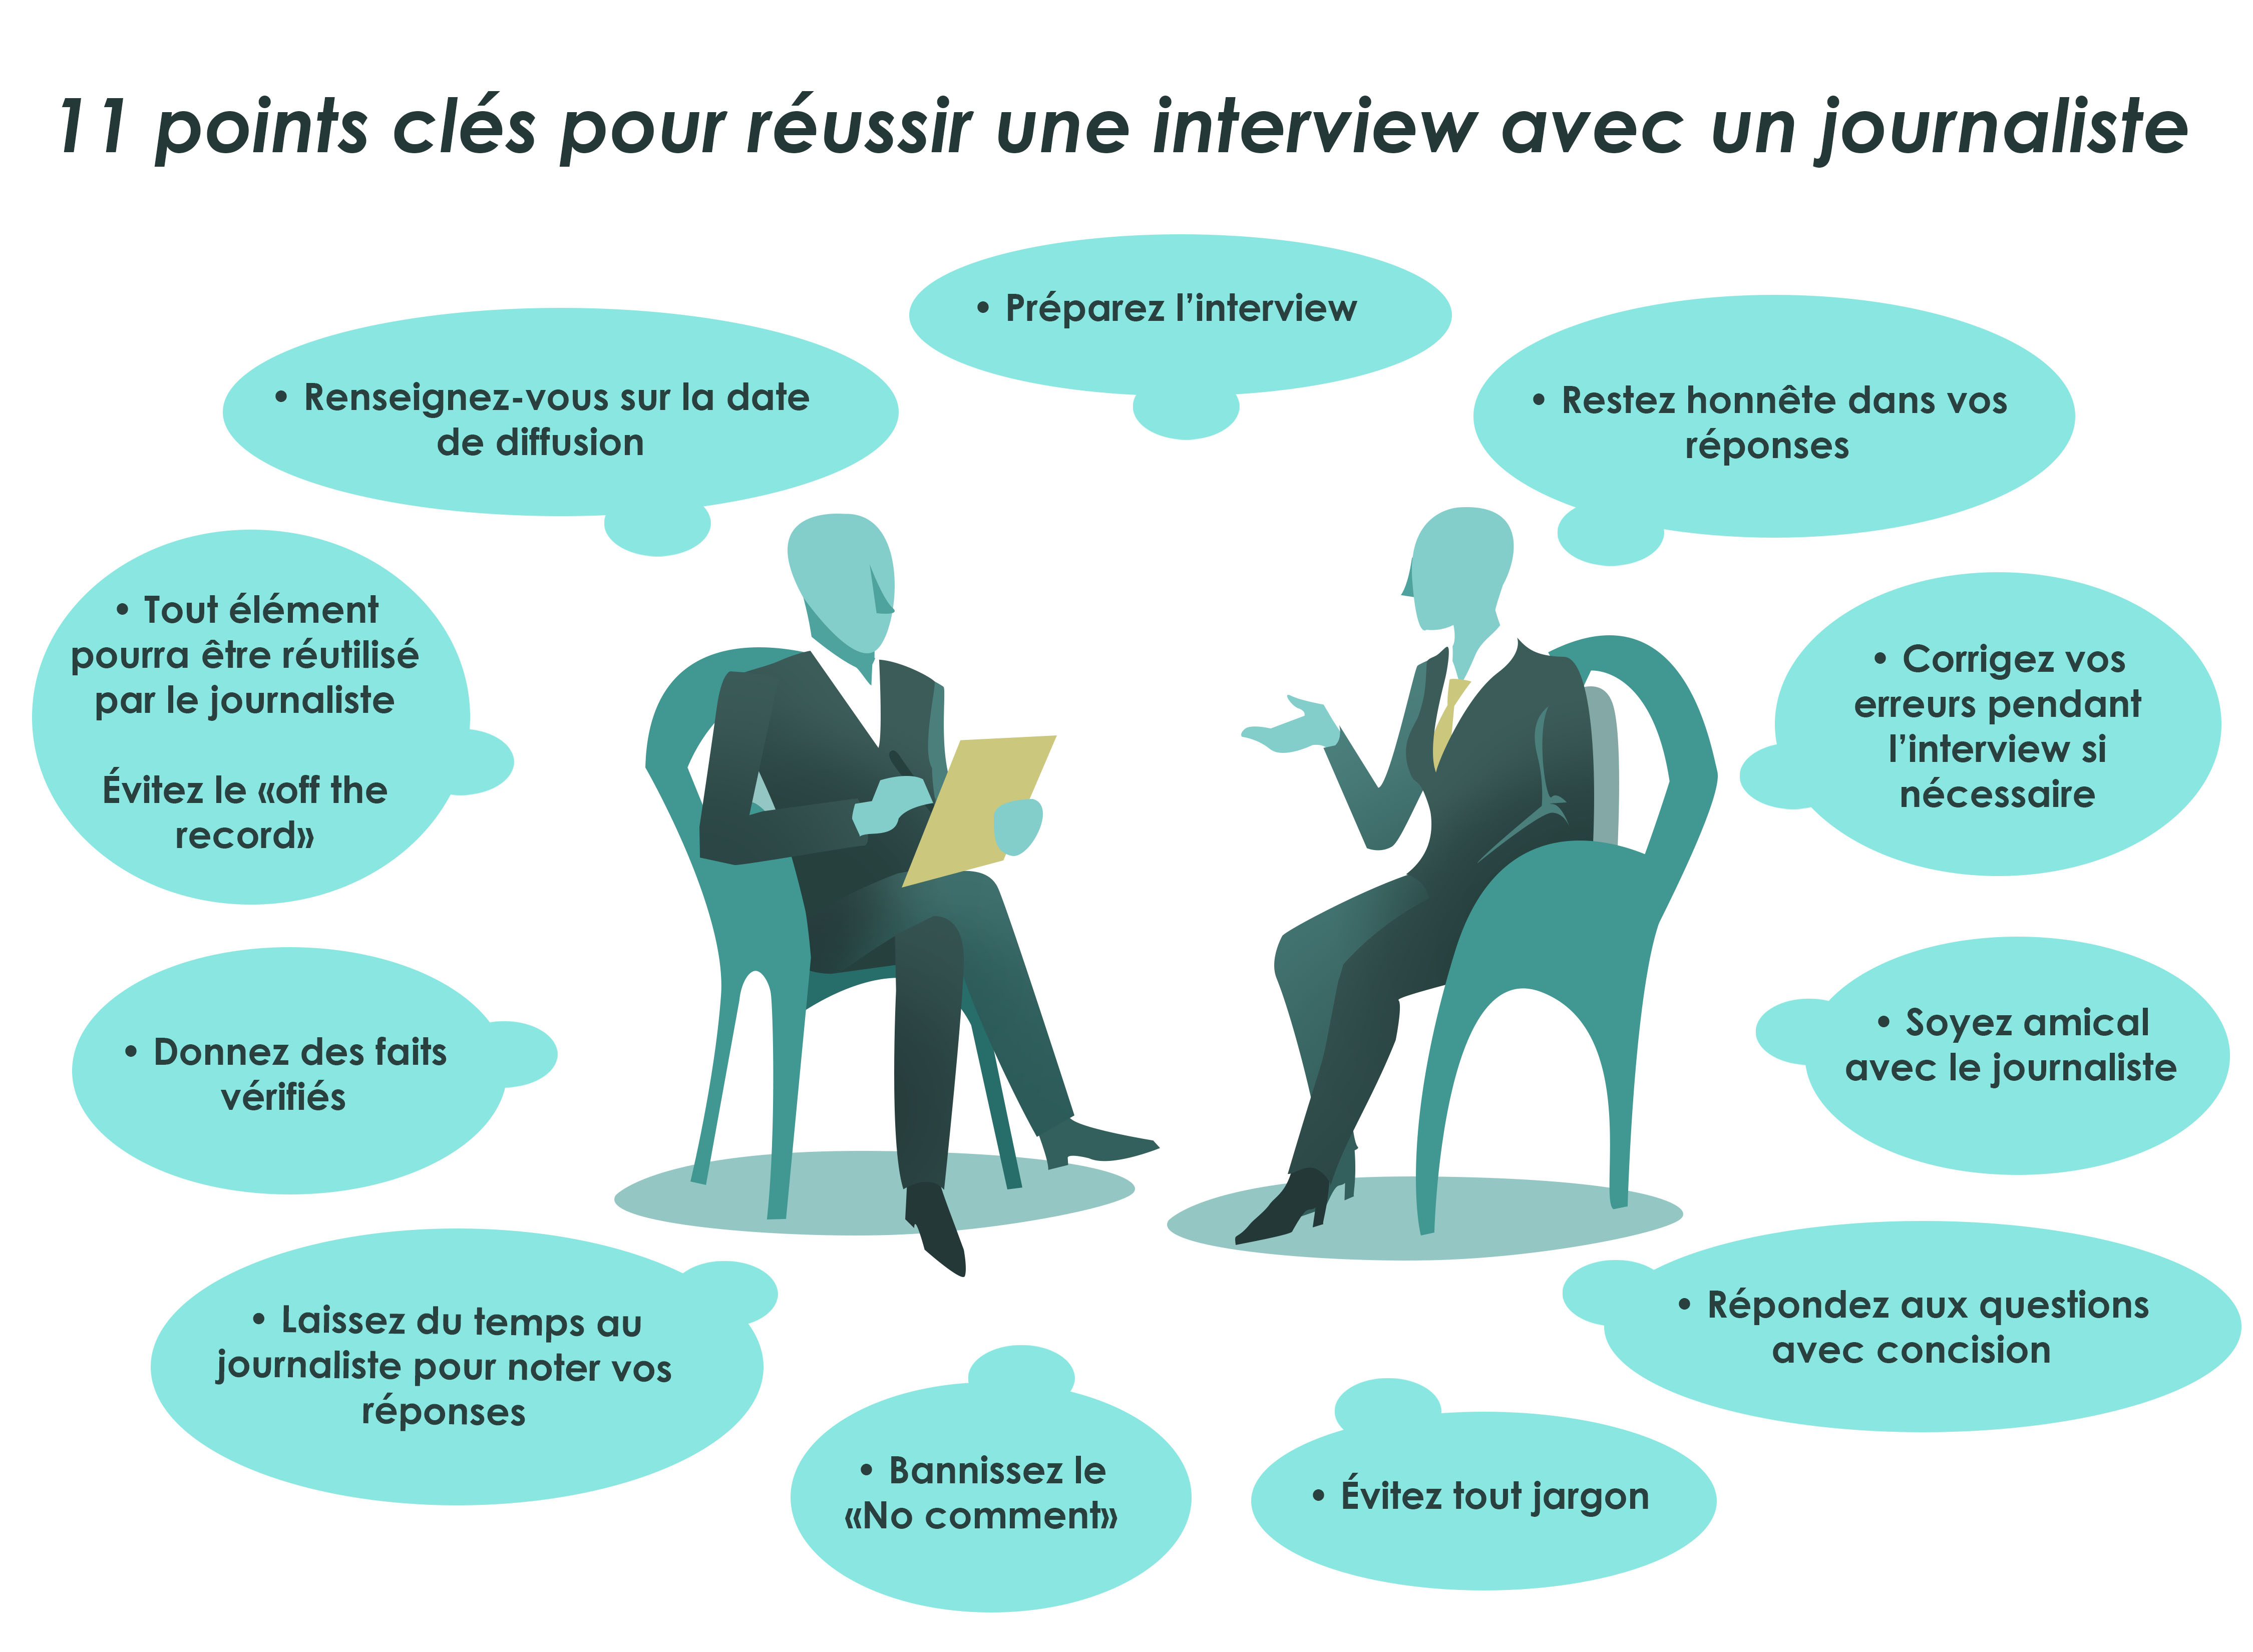 11 Règles pour se préparer à une interview avec un journaliste